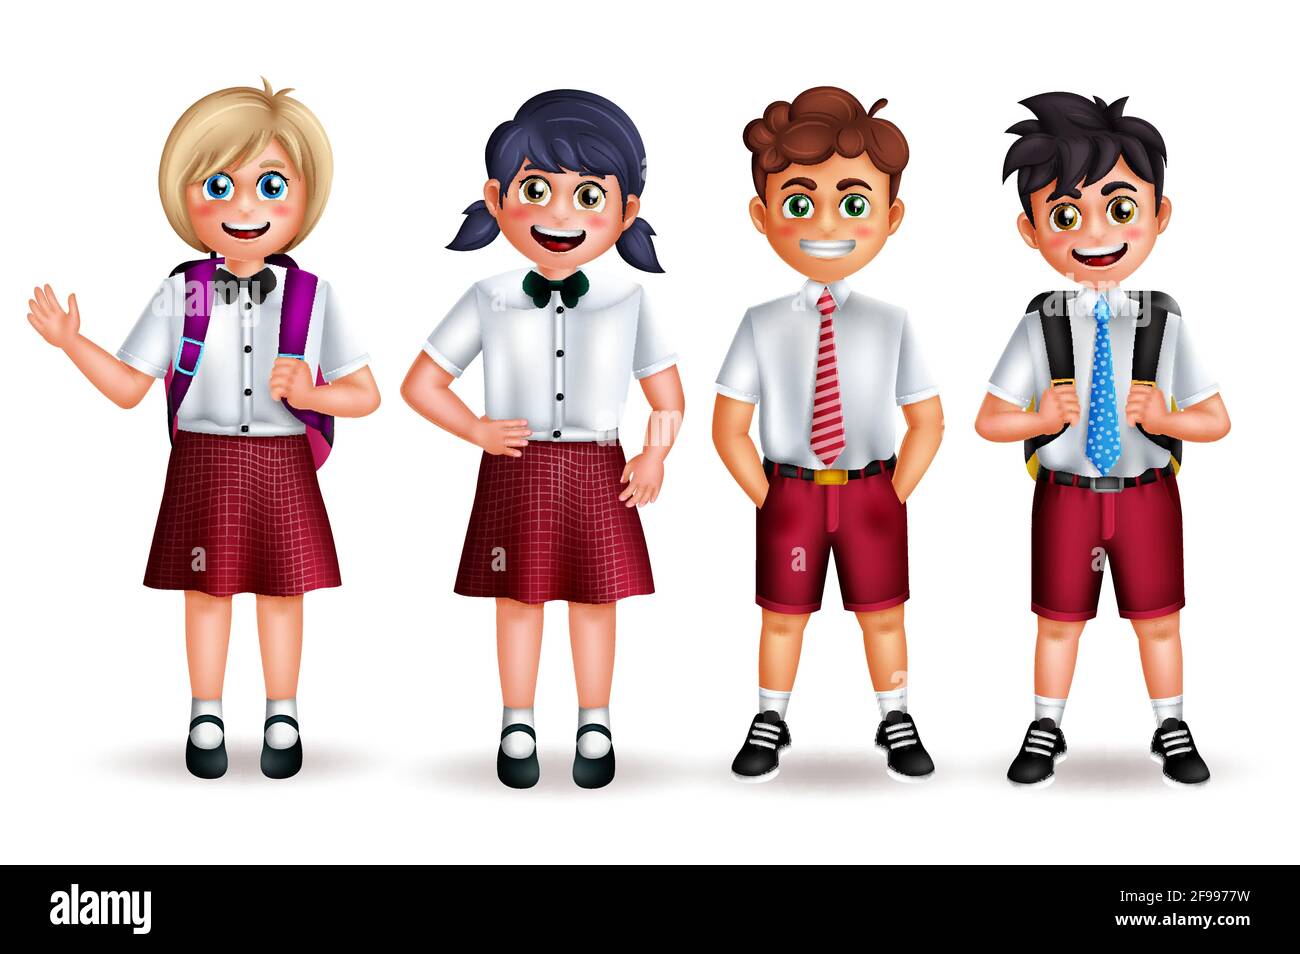 Zeichenvektorsatz der Schule. Back to School Student 3d-Figuren in freundlicher Pose und Gesten tragen Uniform isoliert auf weißem Hintergrund. Stock Vektor